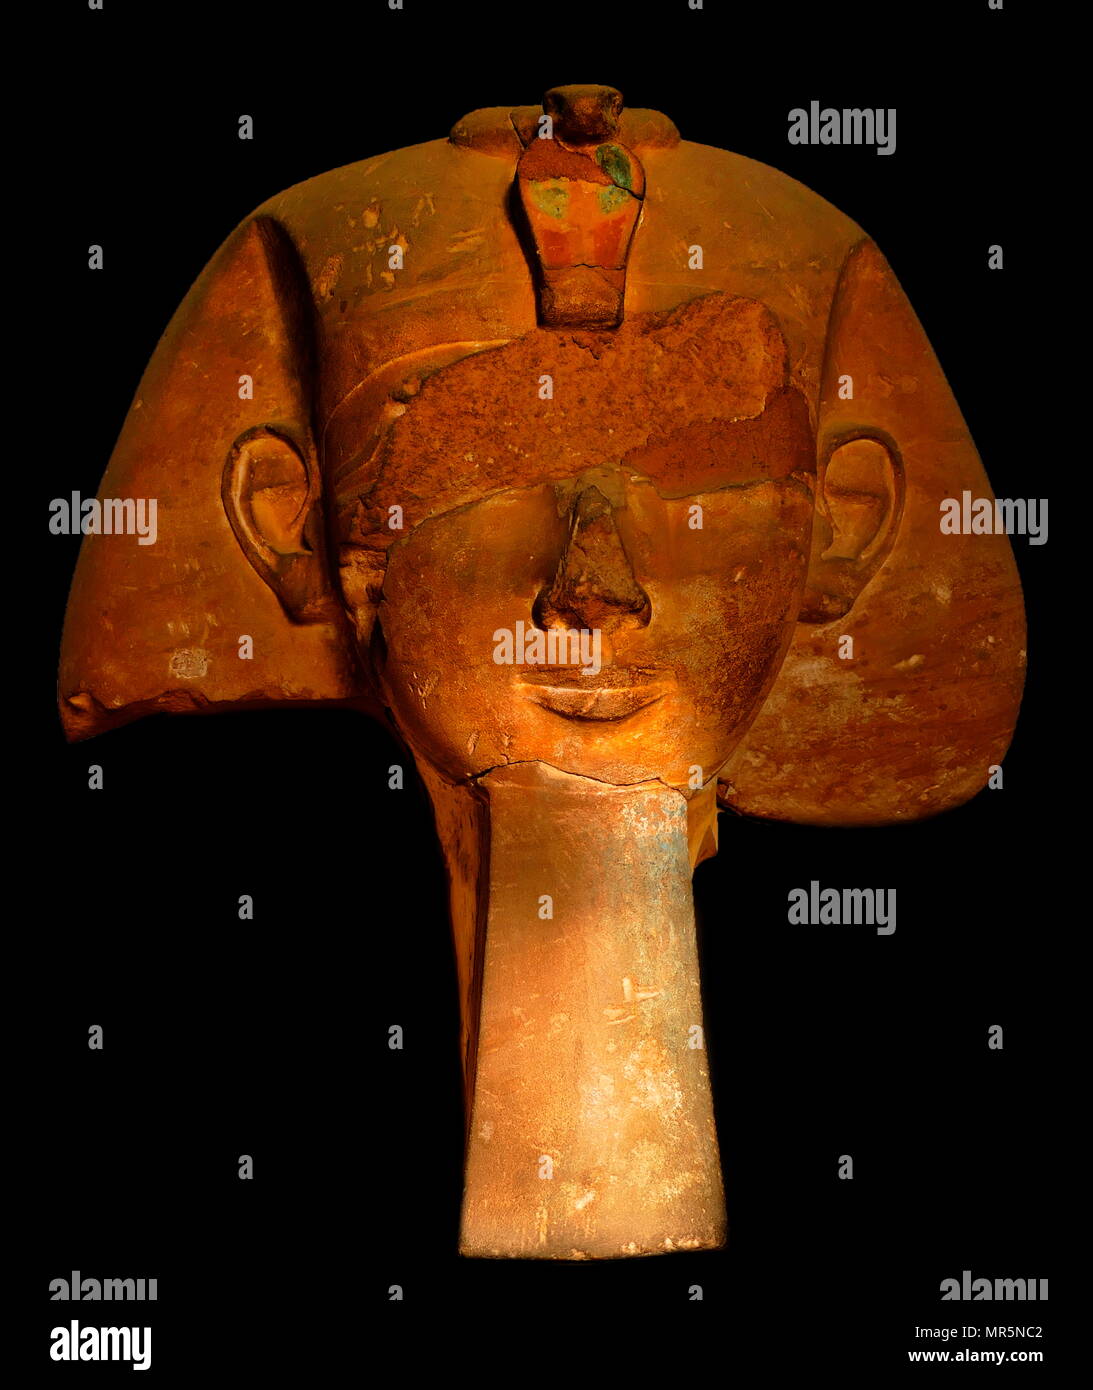 Stein Kopf von einer kolossalen Satzung einer 18. Dynastie Pharao, möglicherweise Königin Hatschepsut (1507 - 1458 v. Chr.), dem Fünften Pharao der achtzehnten Dynastie in Ägypten. Stockfoto